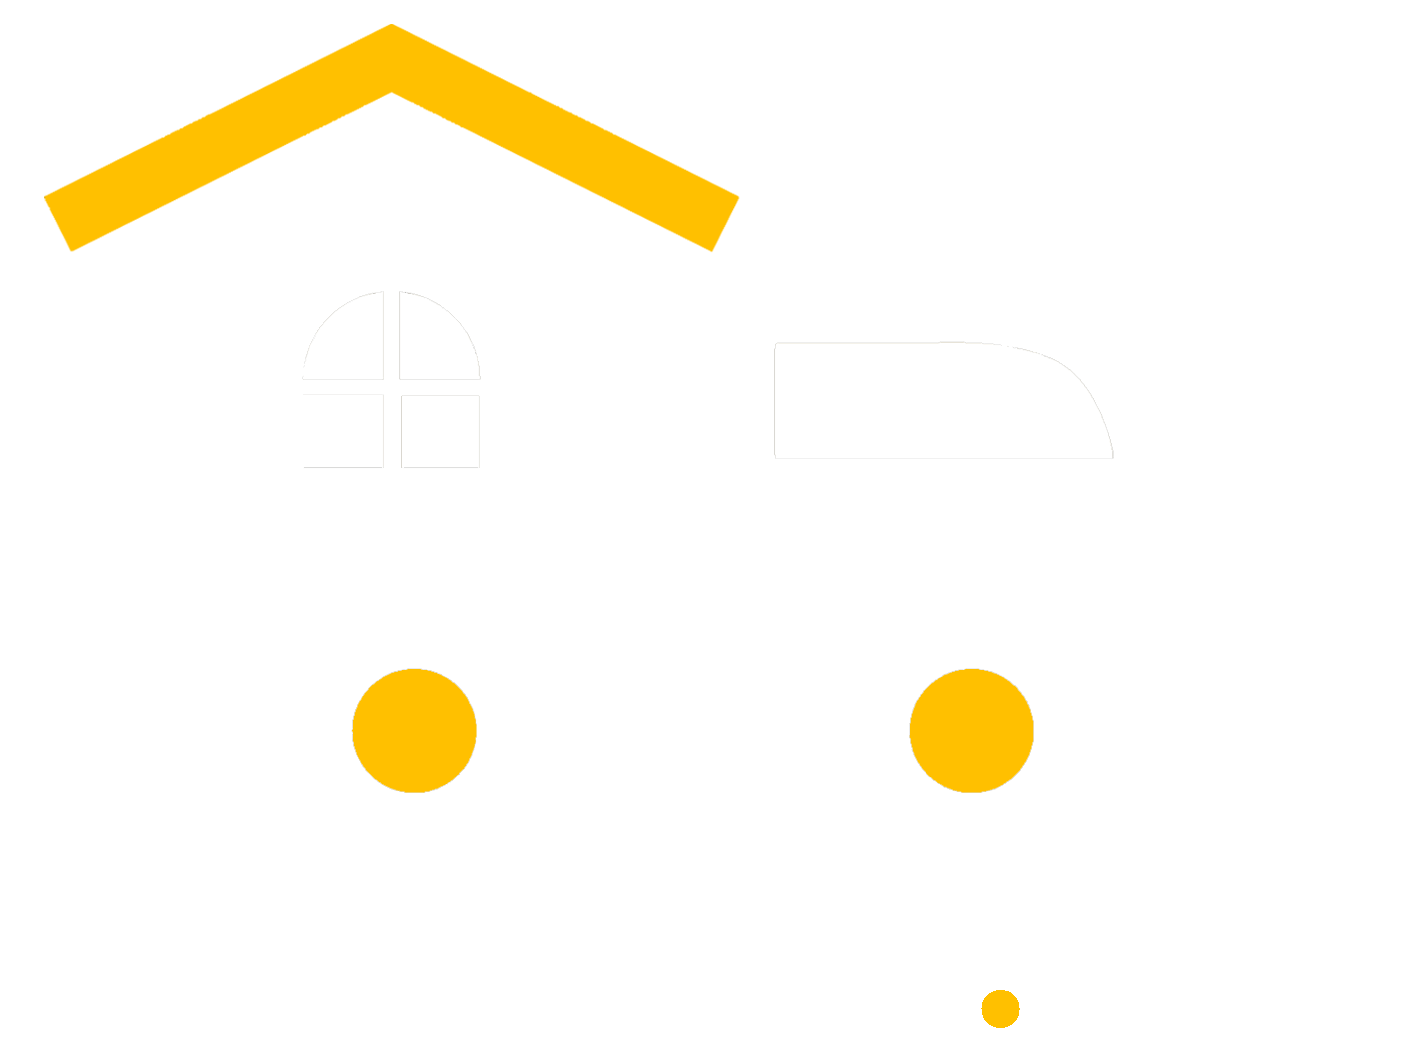 Költöztetés-net - Footer logo image